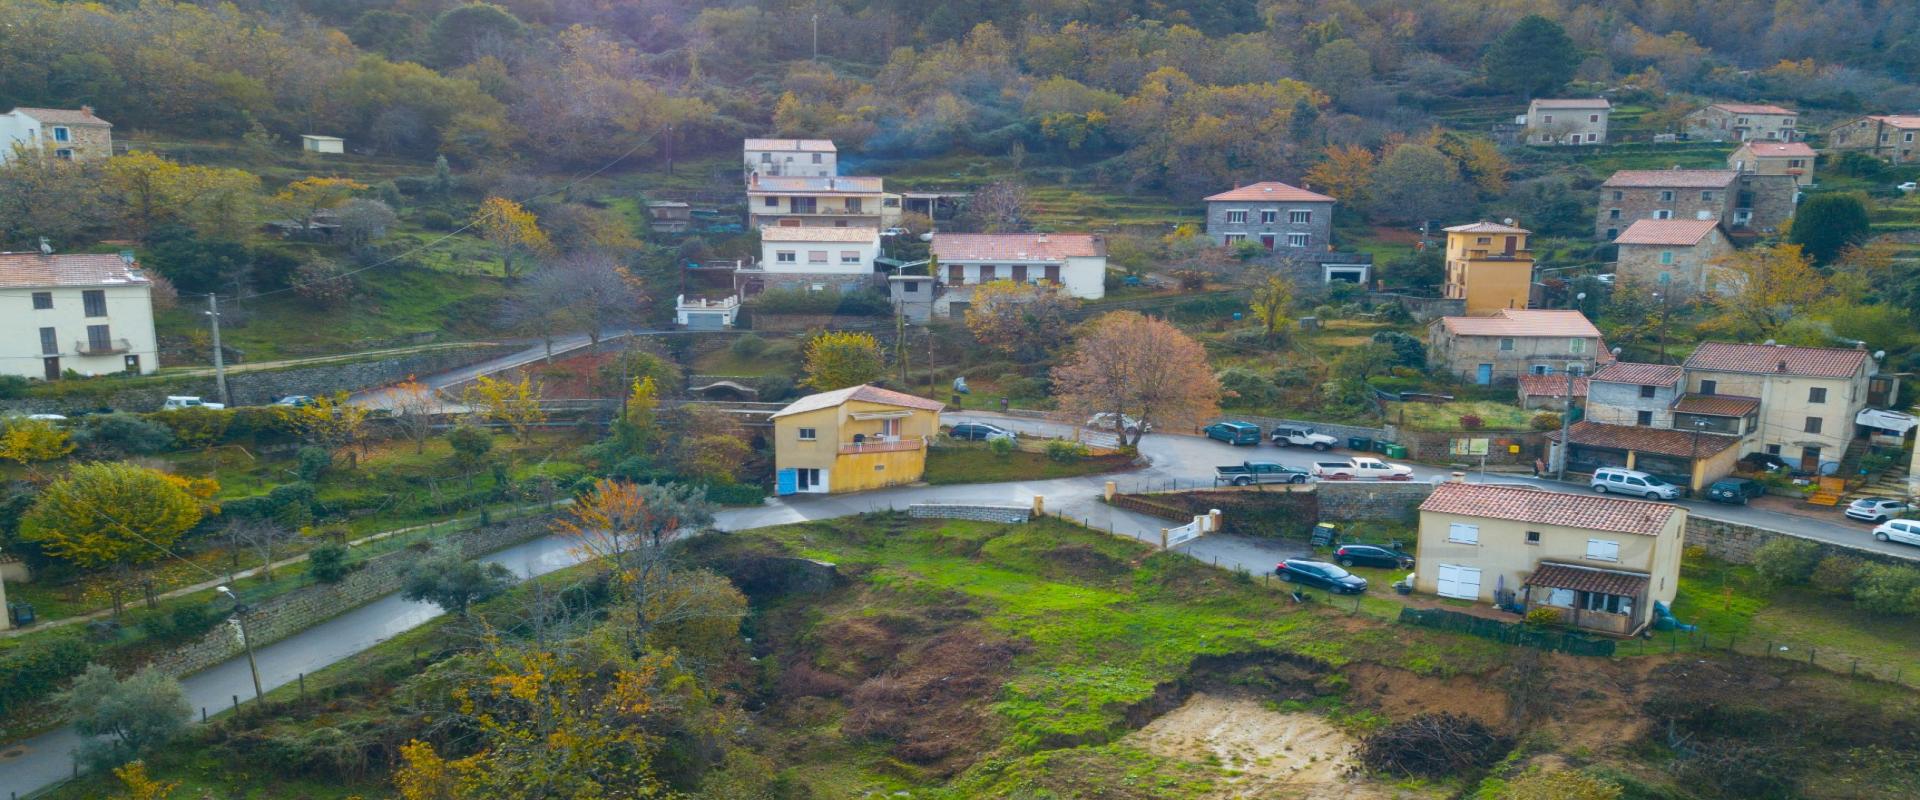 En Corse, en plein cœur du village de Carbuccia, une maison individuelle sur 2 niveaux.